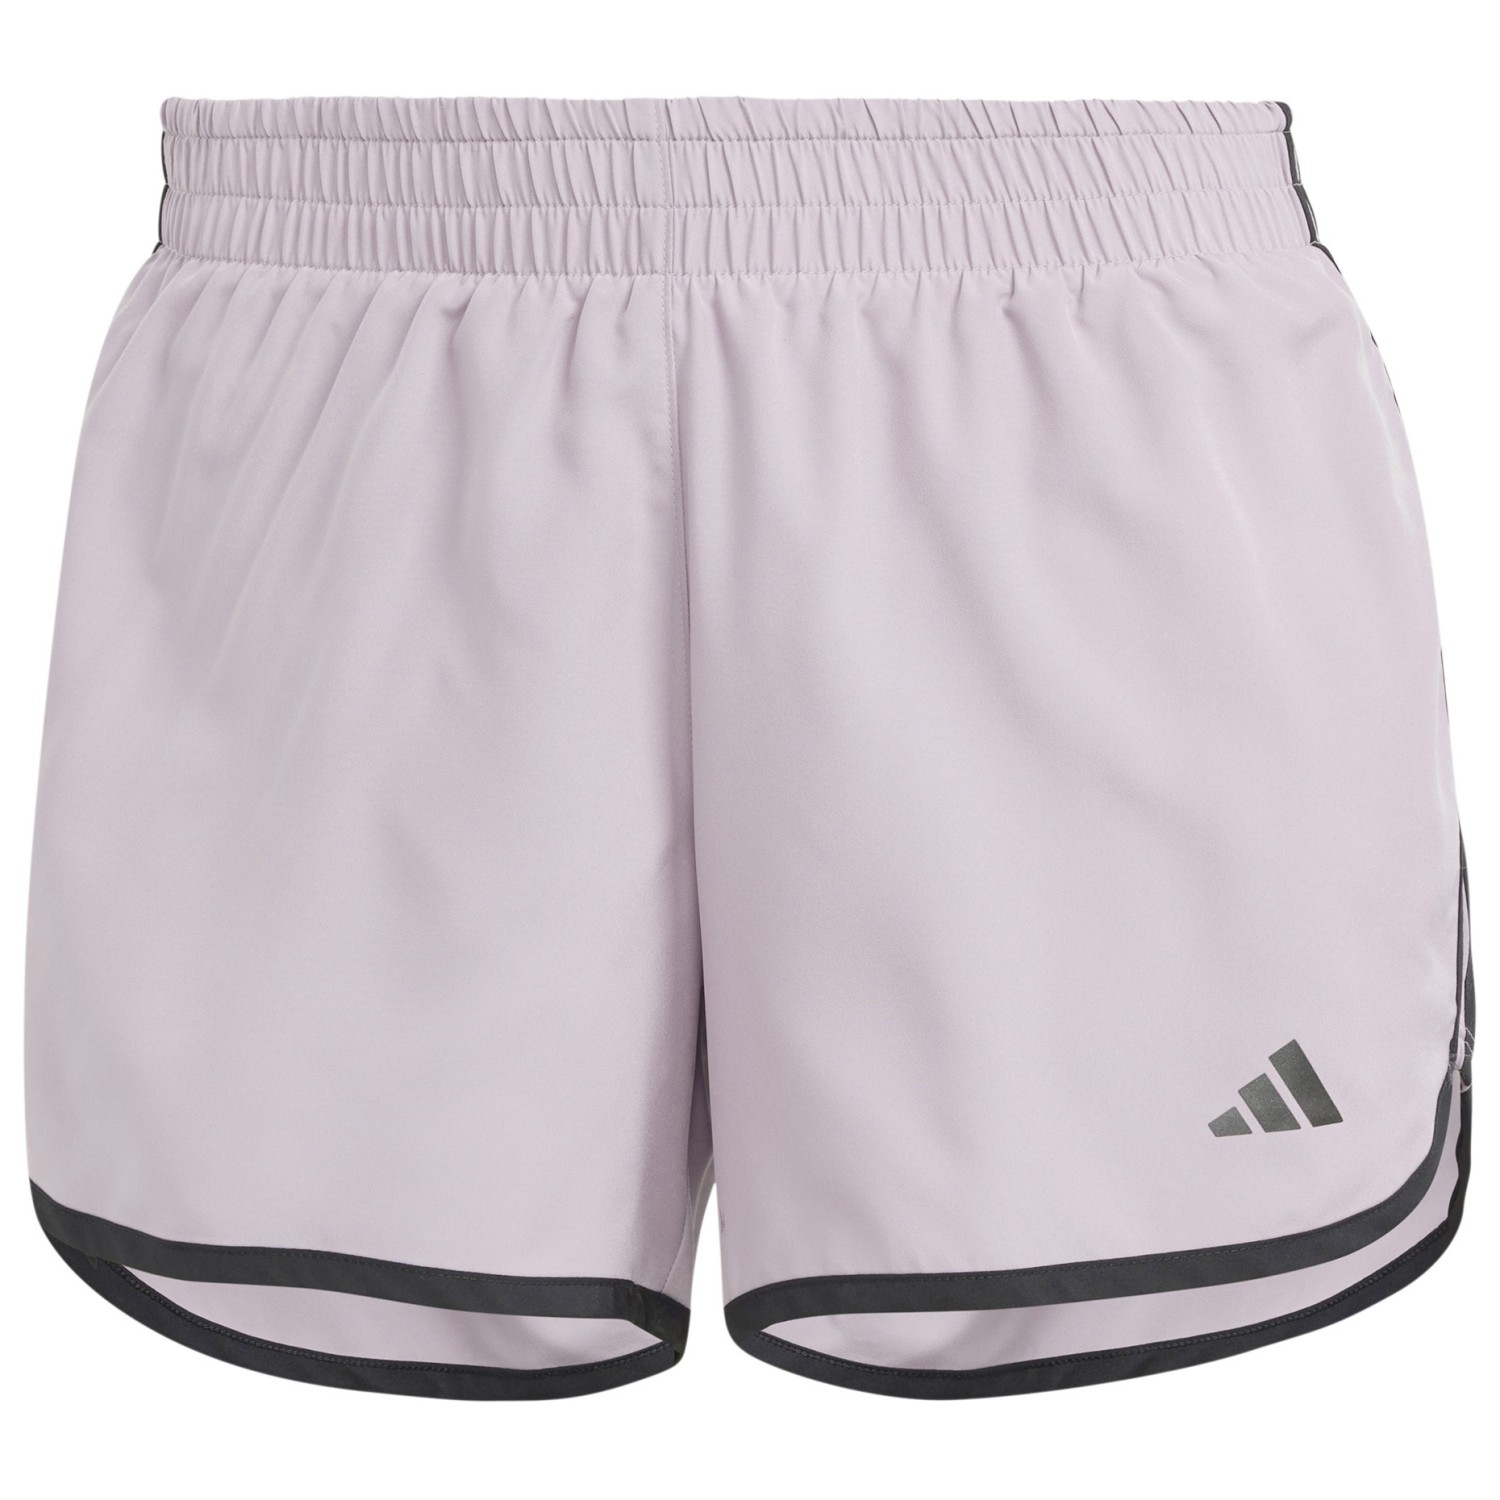 Шорты для бега Adidas Women's M20 Shorts, цвет Preloved Fig travel limit switch zs236 11z m20 ts236 11z m20